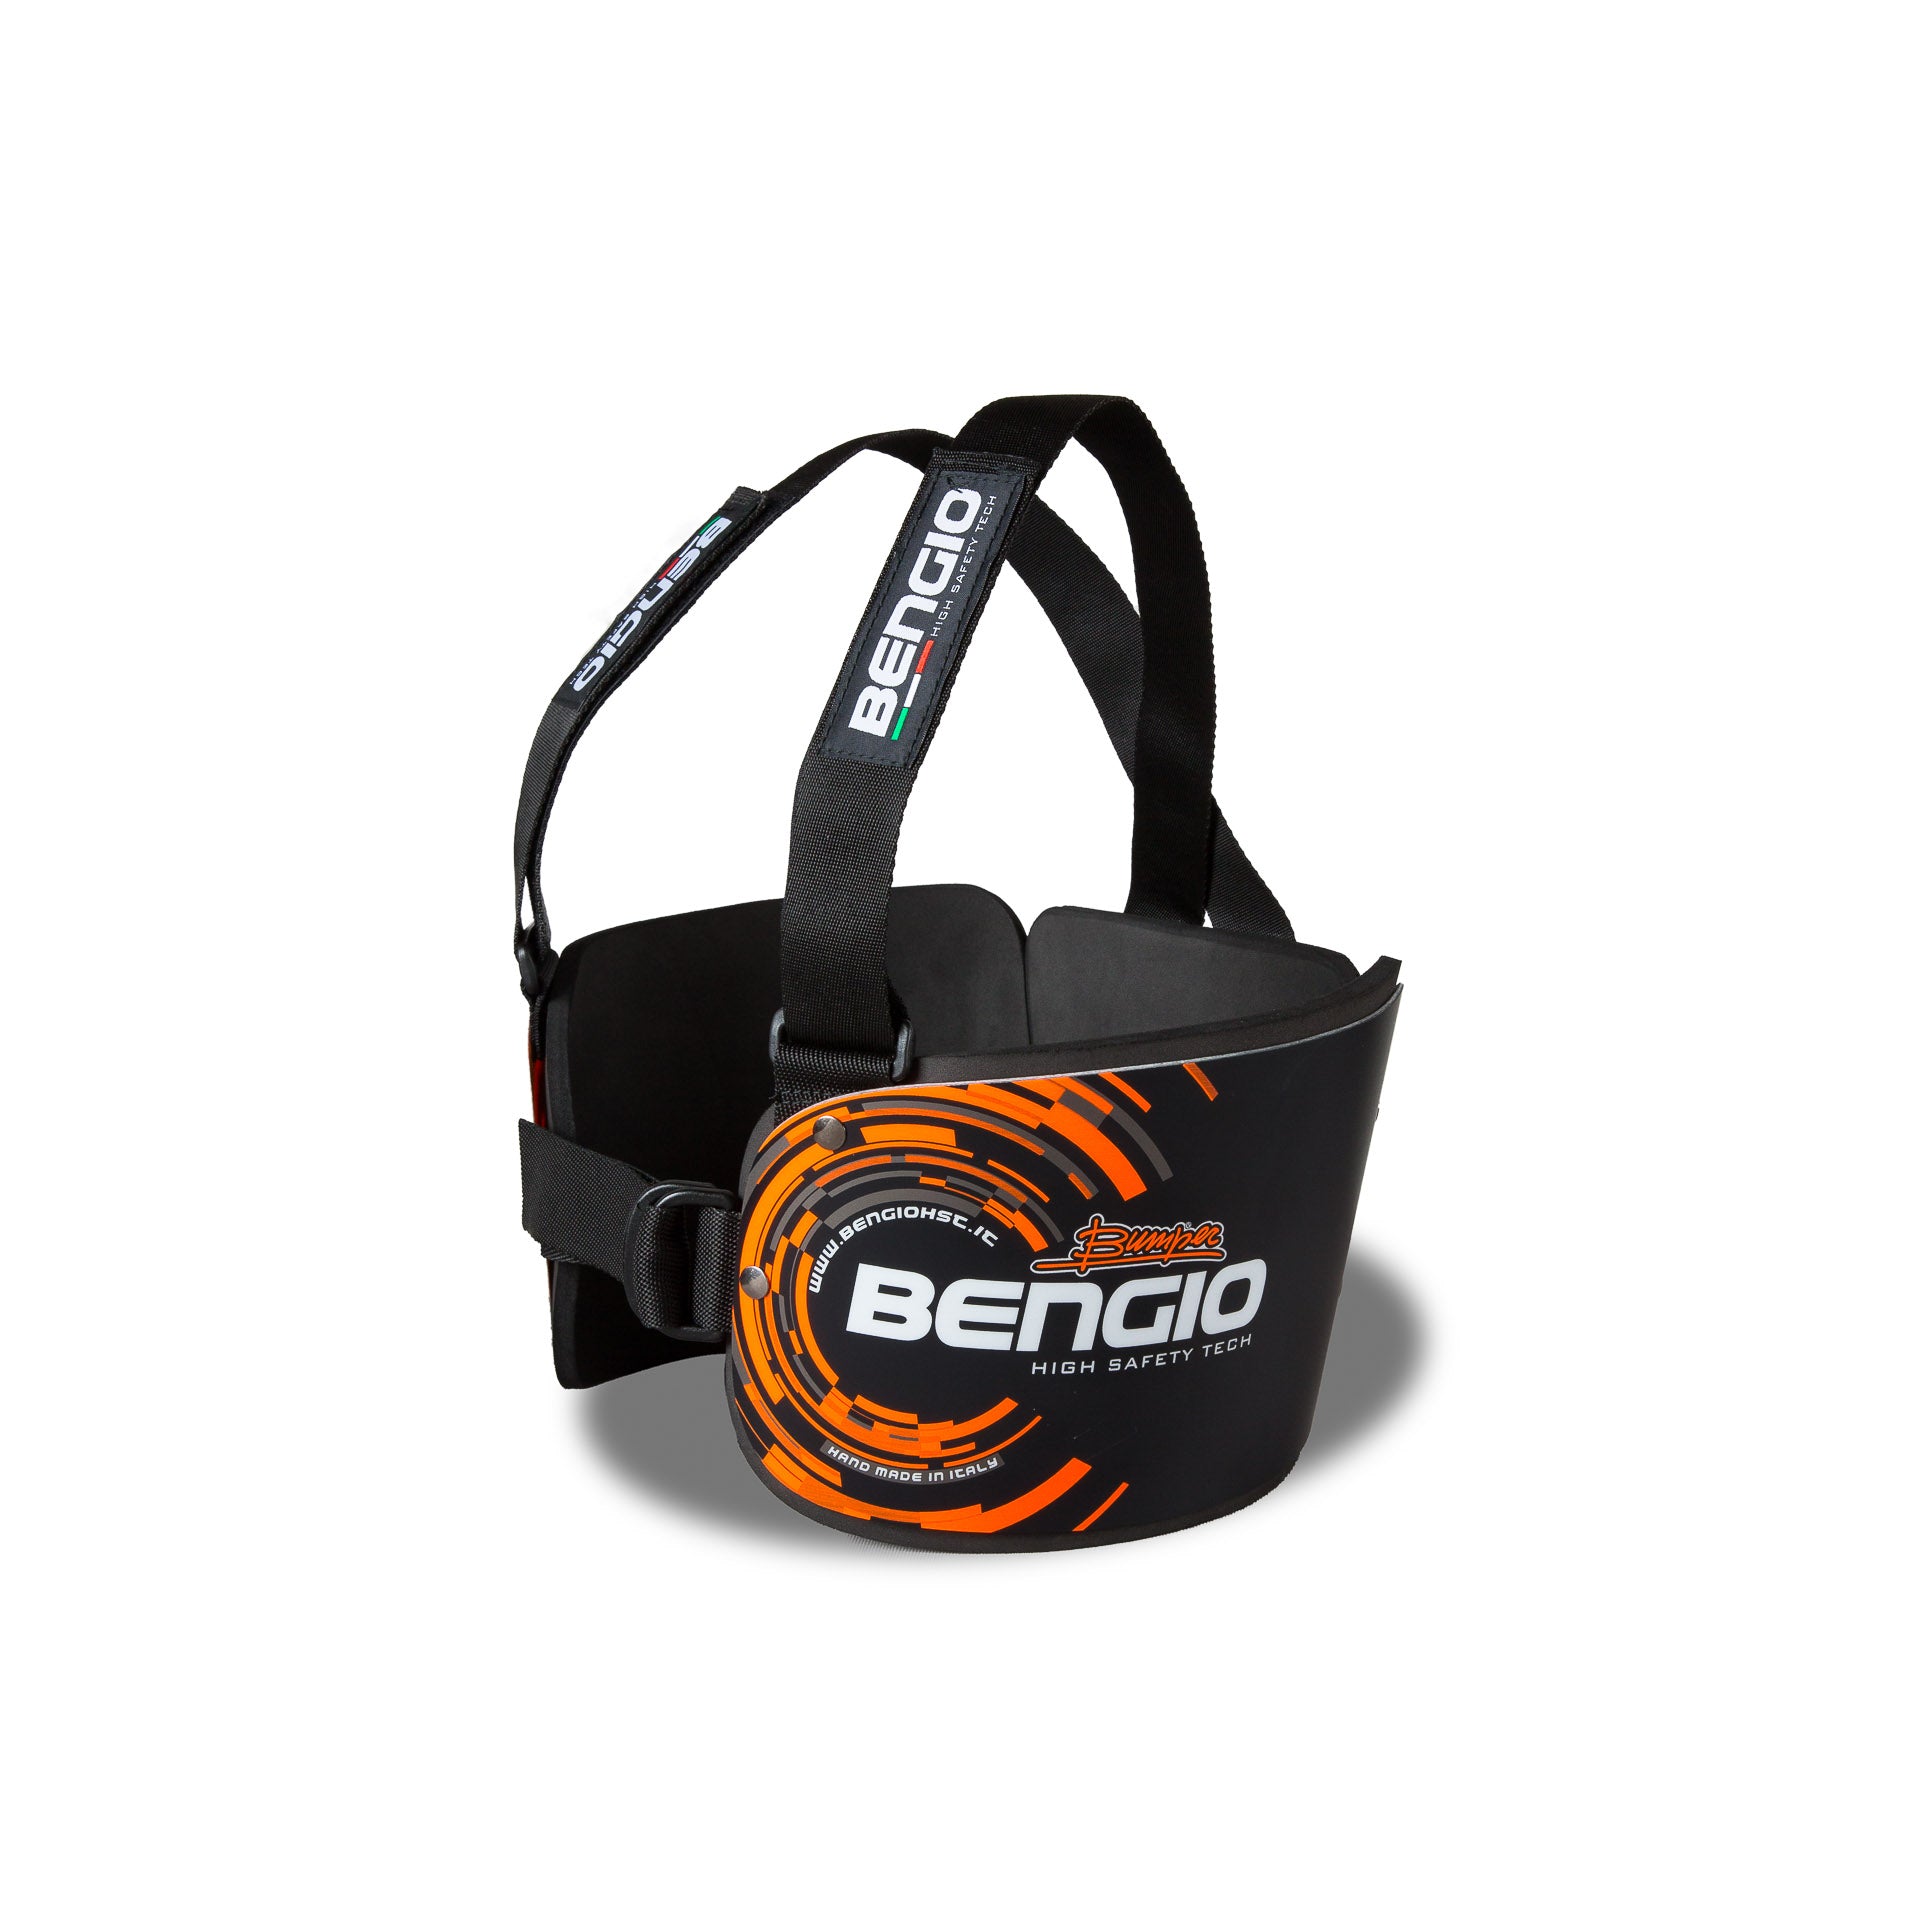 BENGIO STDSBO BUMPER Standard Захист ребер для картингу, чорний/помаранчевий, розмір S Photo-1 